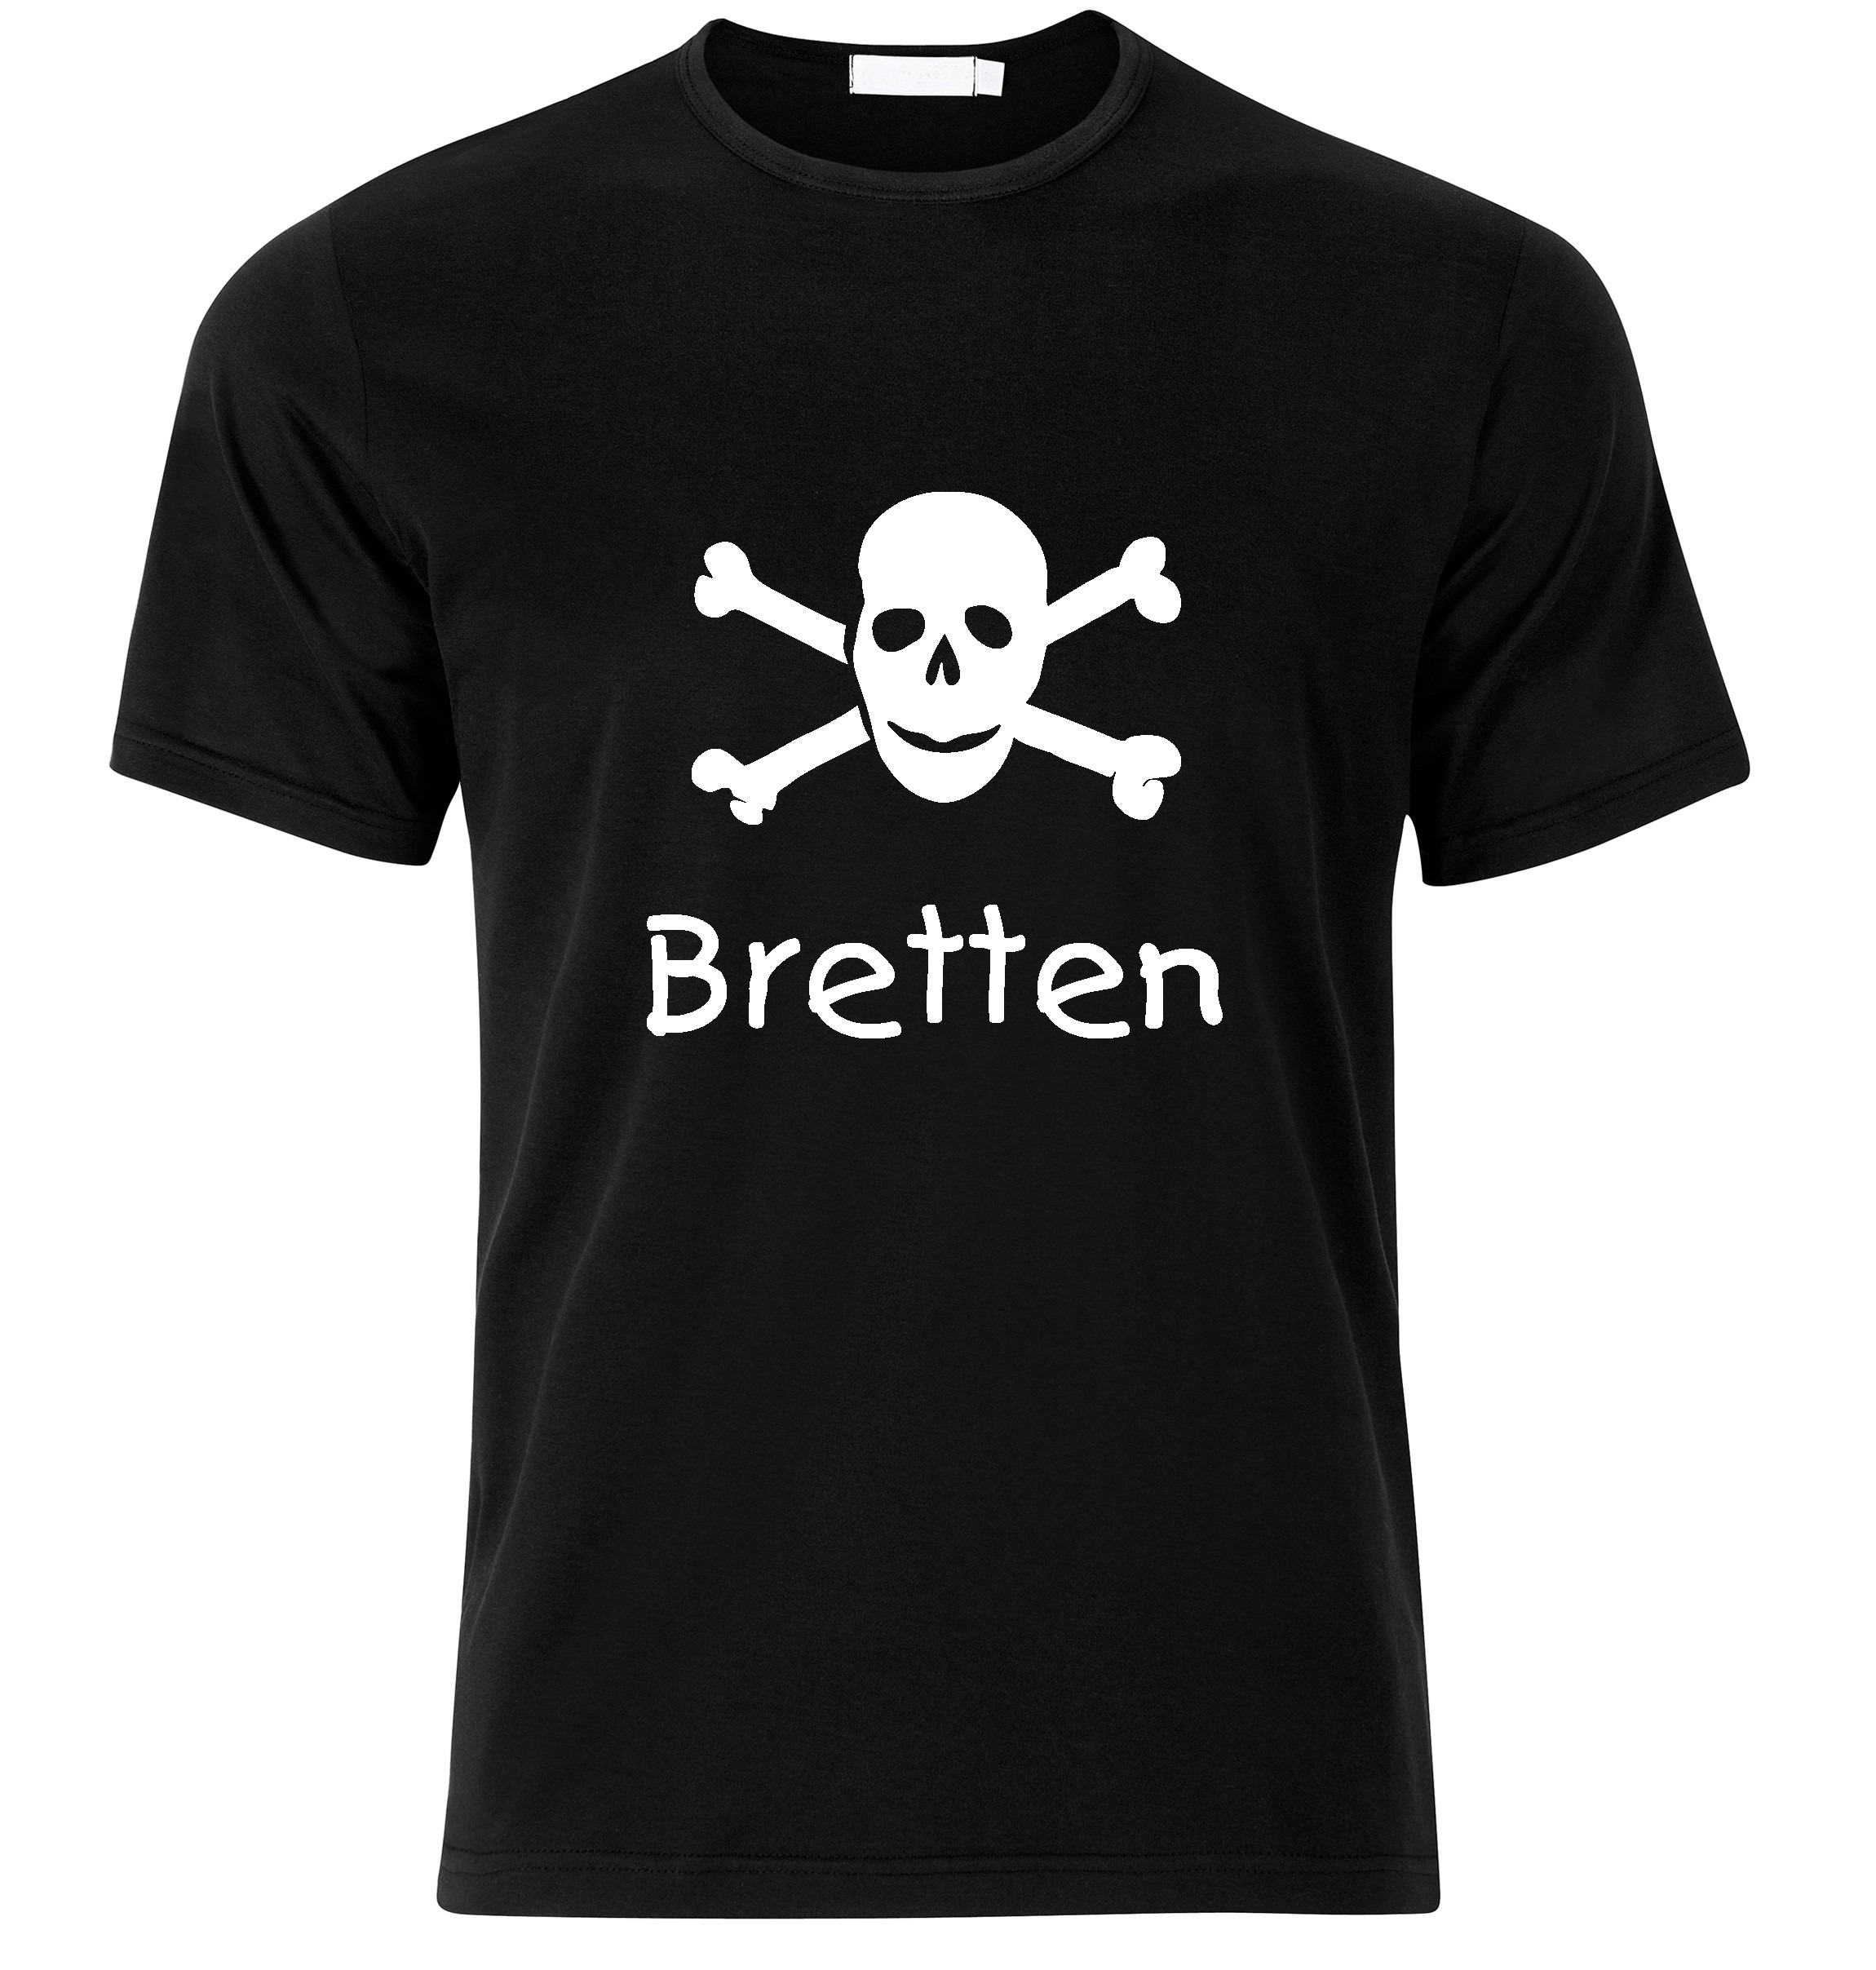 T-Shirt Bretten Jolly Roger, Totenkopf